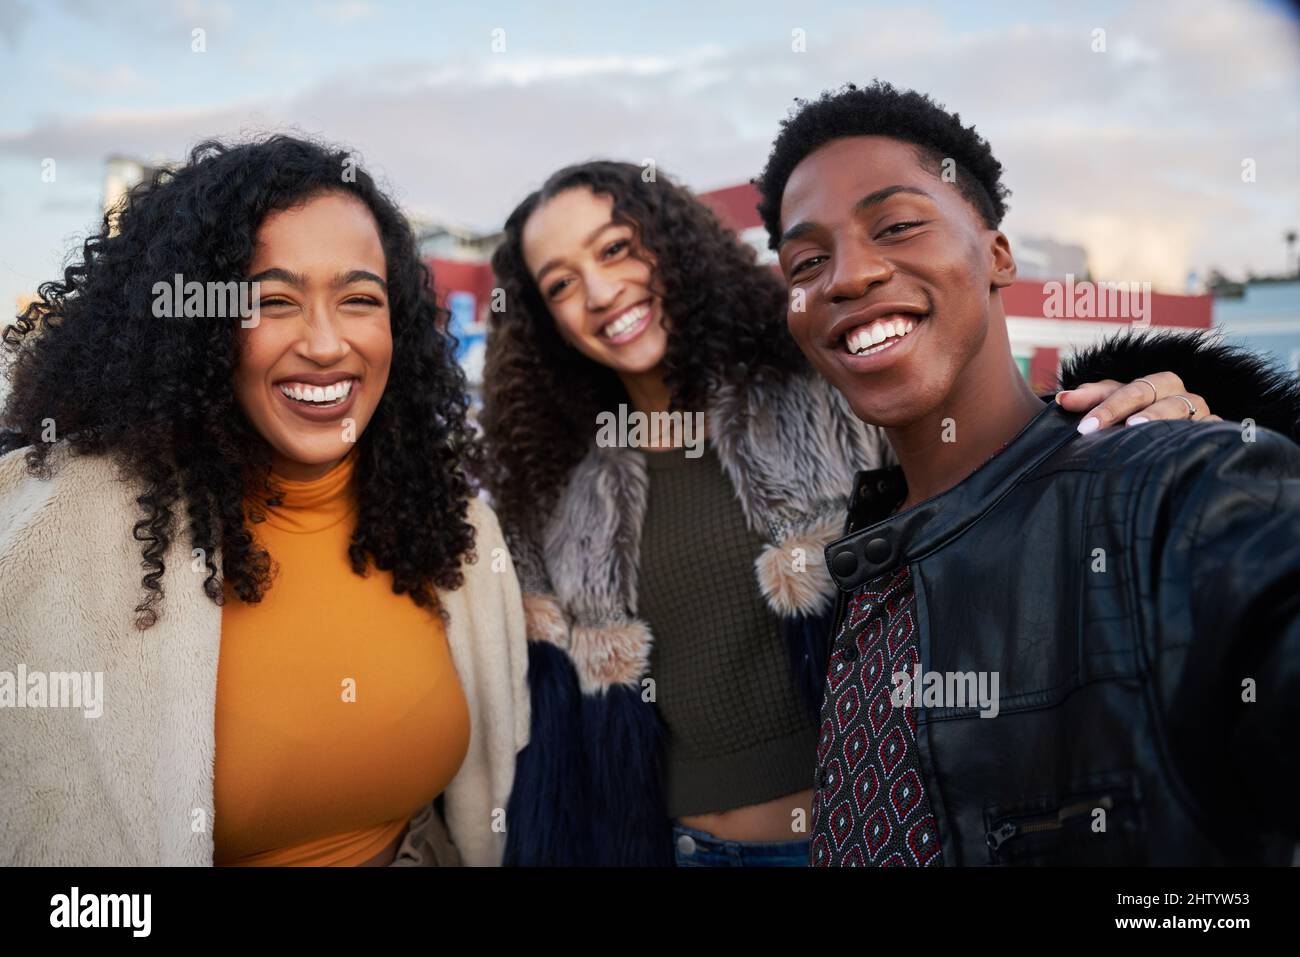 Eine Gruppe verschiedener Freunde, die auf der Dachparty Selfie machen. Lächelnd mit Stadtbild im Hintergrund Stockfoto